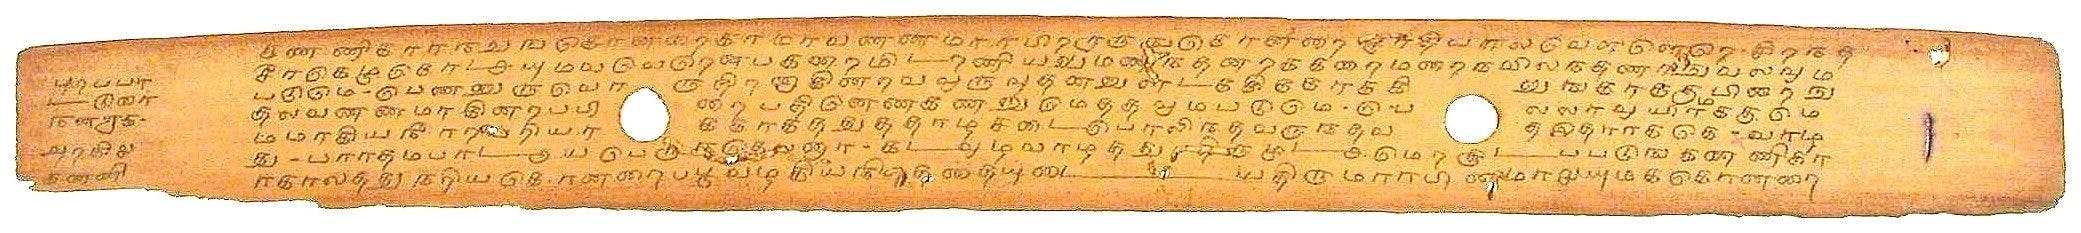 Palm-leaf manuscript of the Purananuru